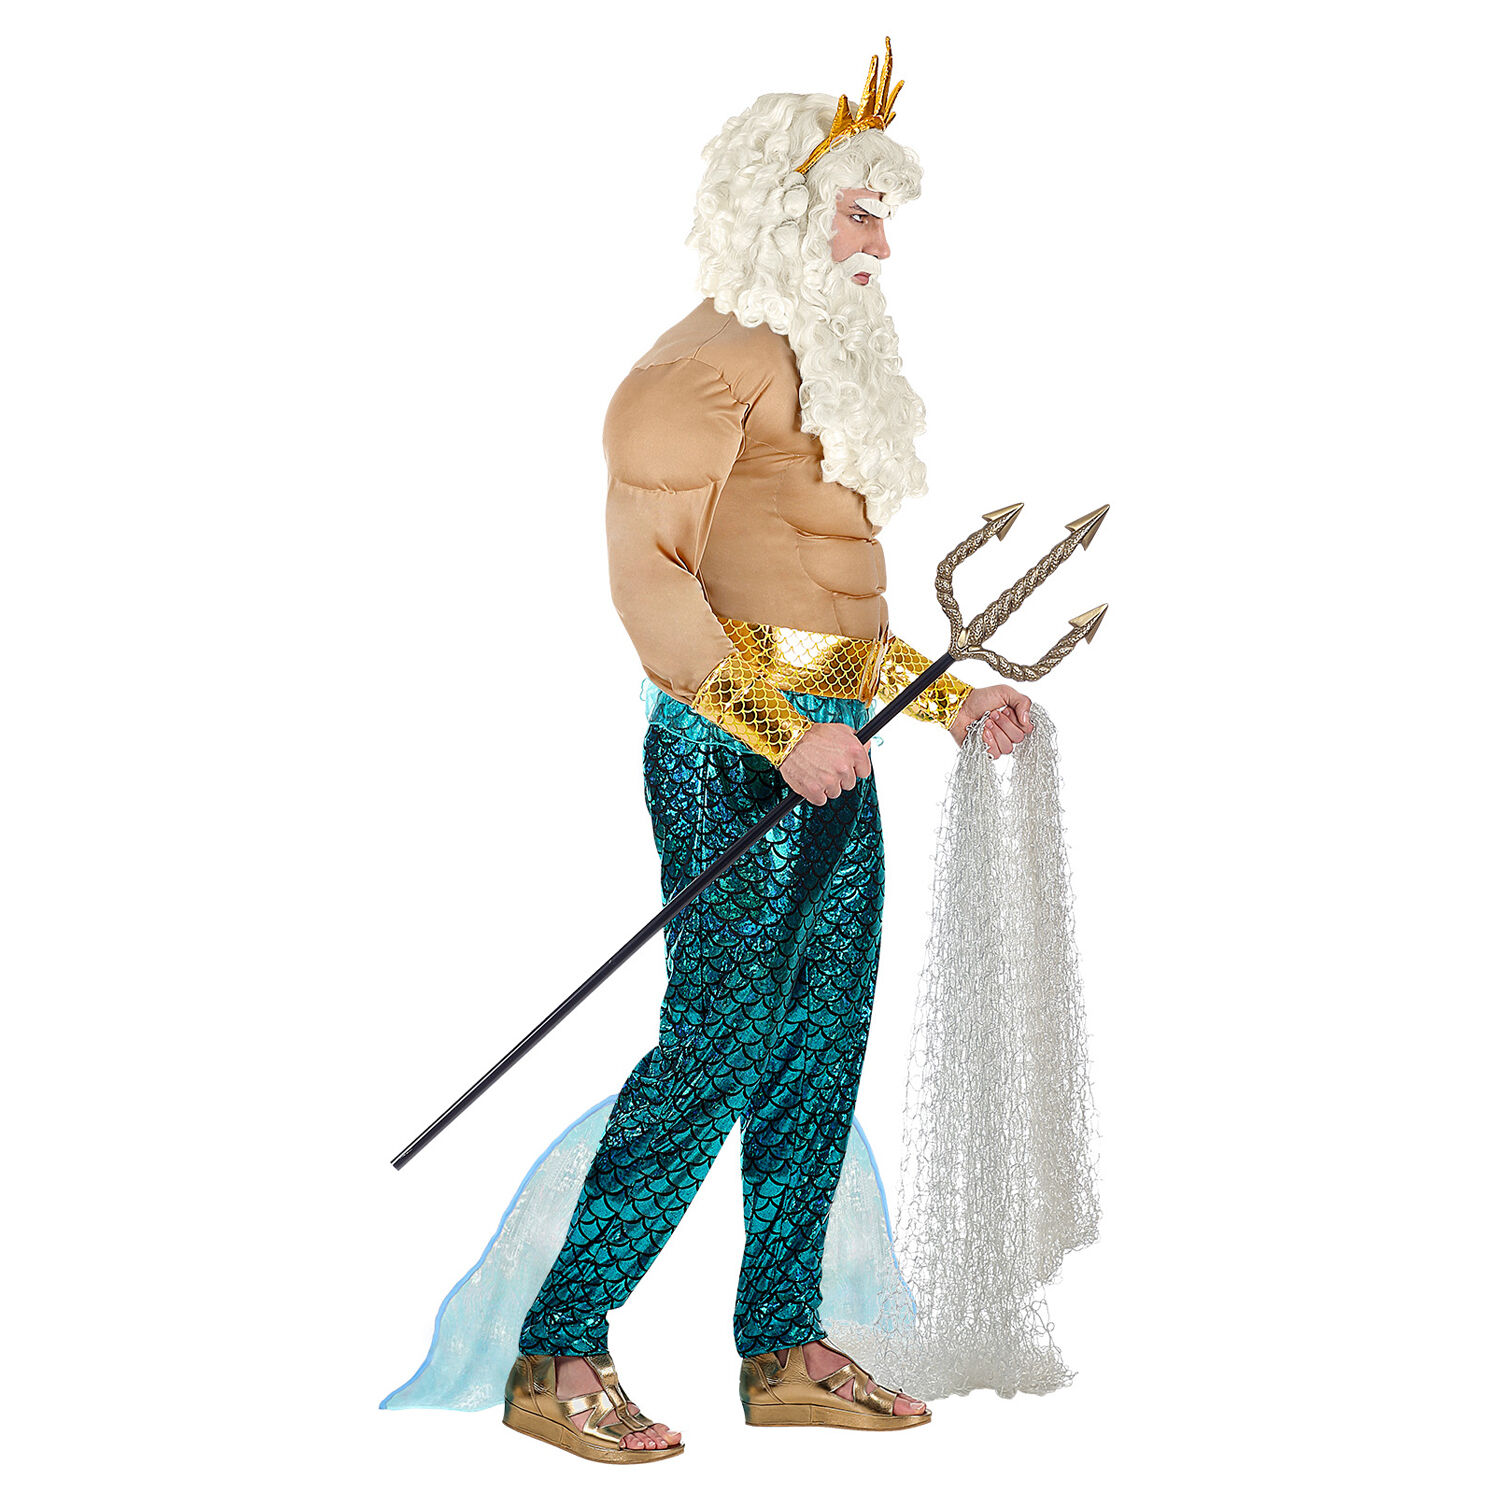 NEU Herren-Kostüm Poseidon / Wassermann, Muskelshirt mit Hose, Gürtel, Armschmuck und Krone, Gr. S Bild 2